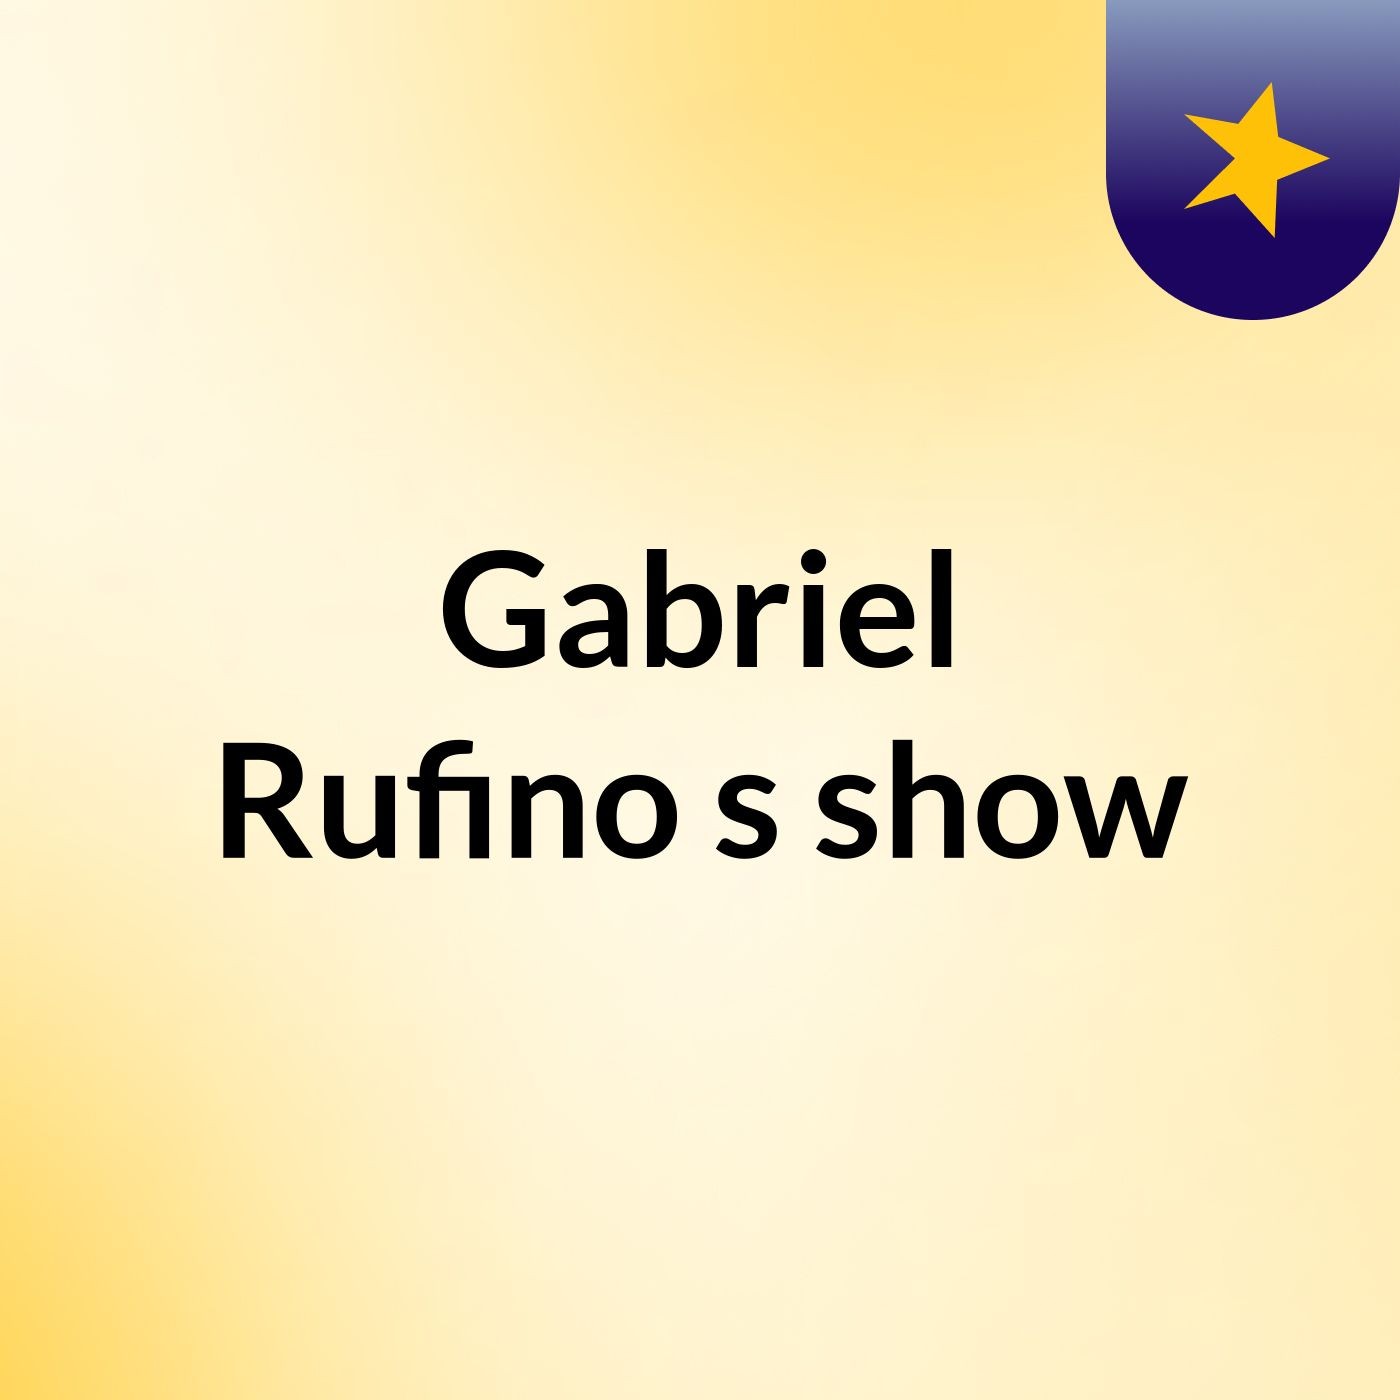 Gabriel Rufino's show